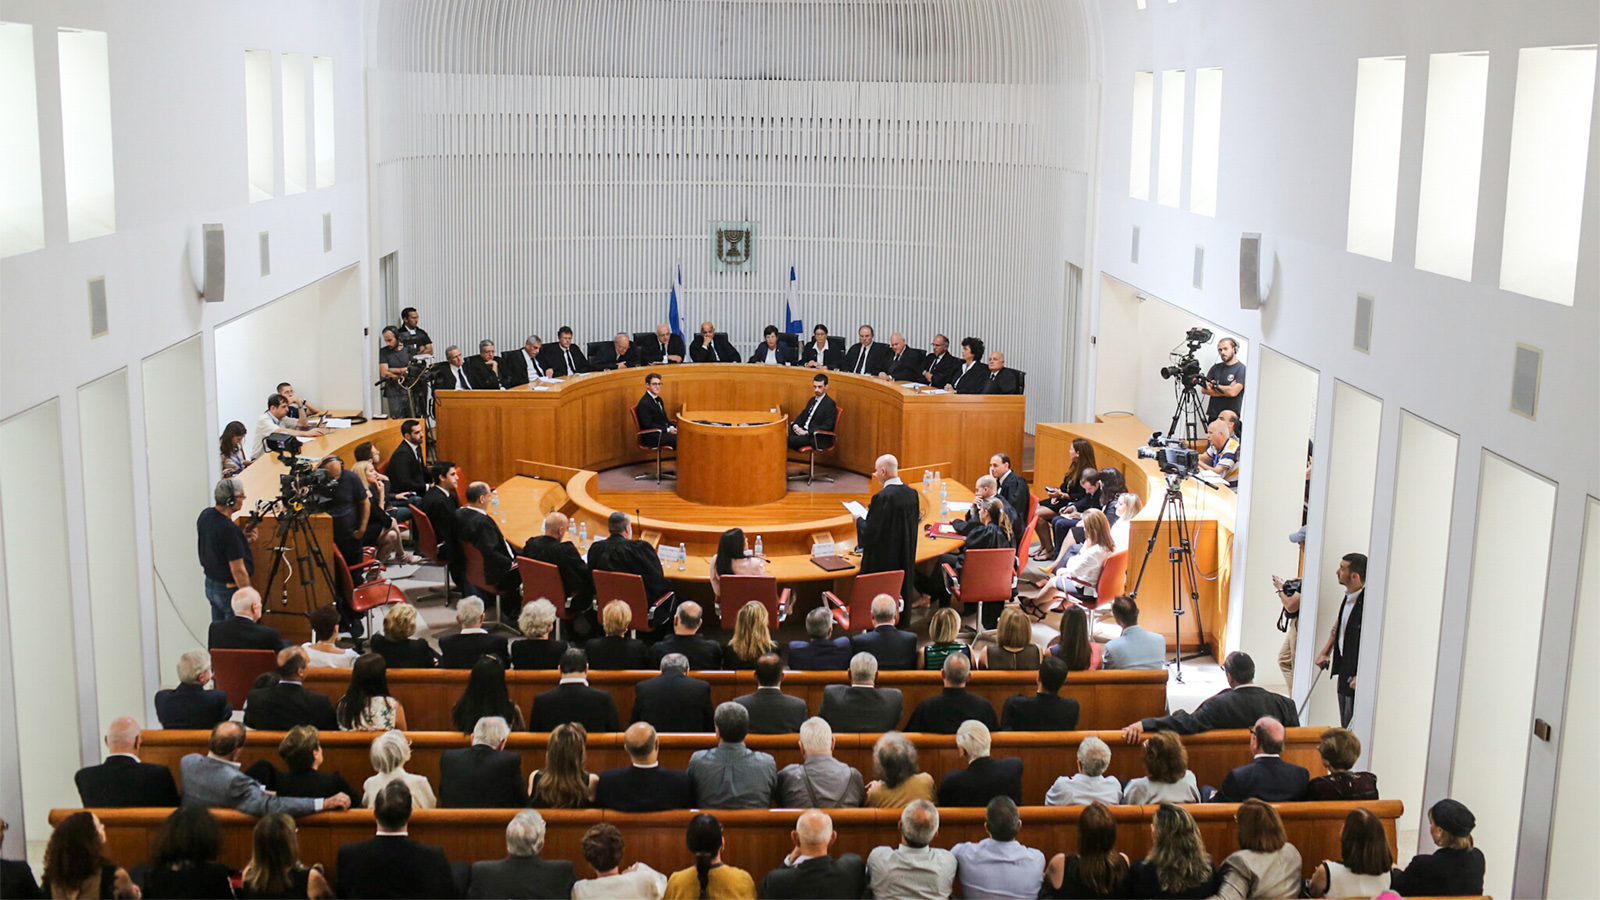 טקס הפרידה משופט העליון ג'ובראן (צילום: נועם מושקוביץ)